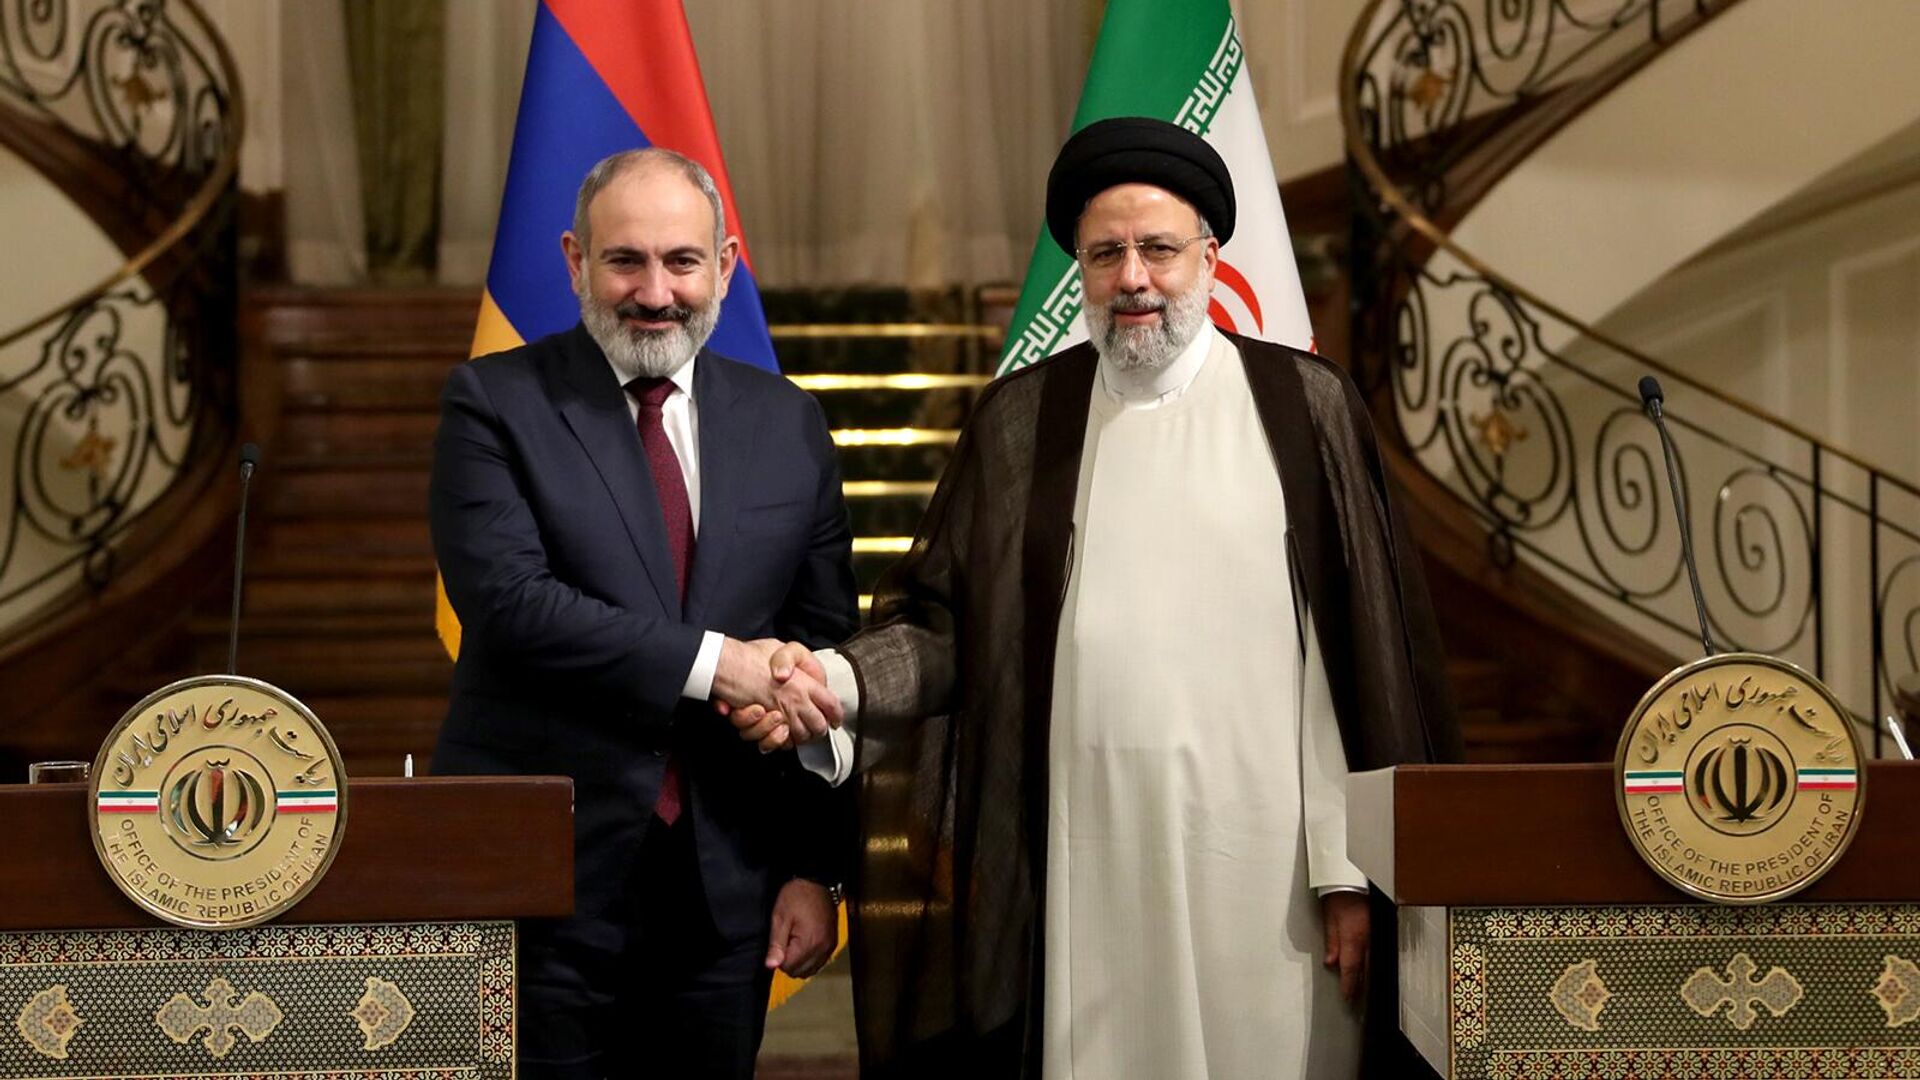 Առաջիկայում ականատես կլինենք երկկողմ բազմաշերտ օրակարգի ընդլայնմանը․ վարչապետը շնորհավորական ուղերձներ է հղել Իրանի հոգևոր առաջնորդին և Իրանի նախագահին